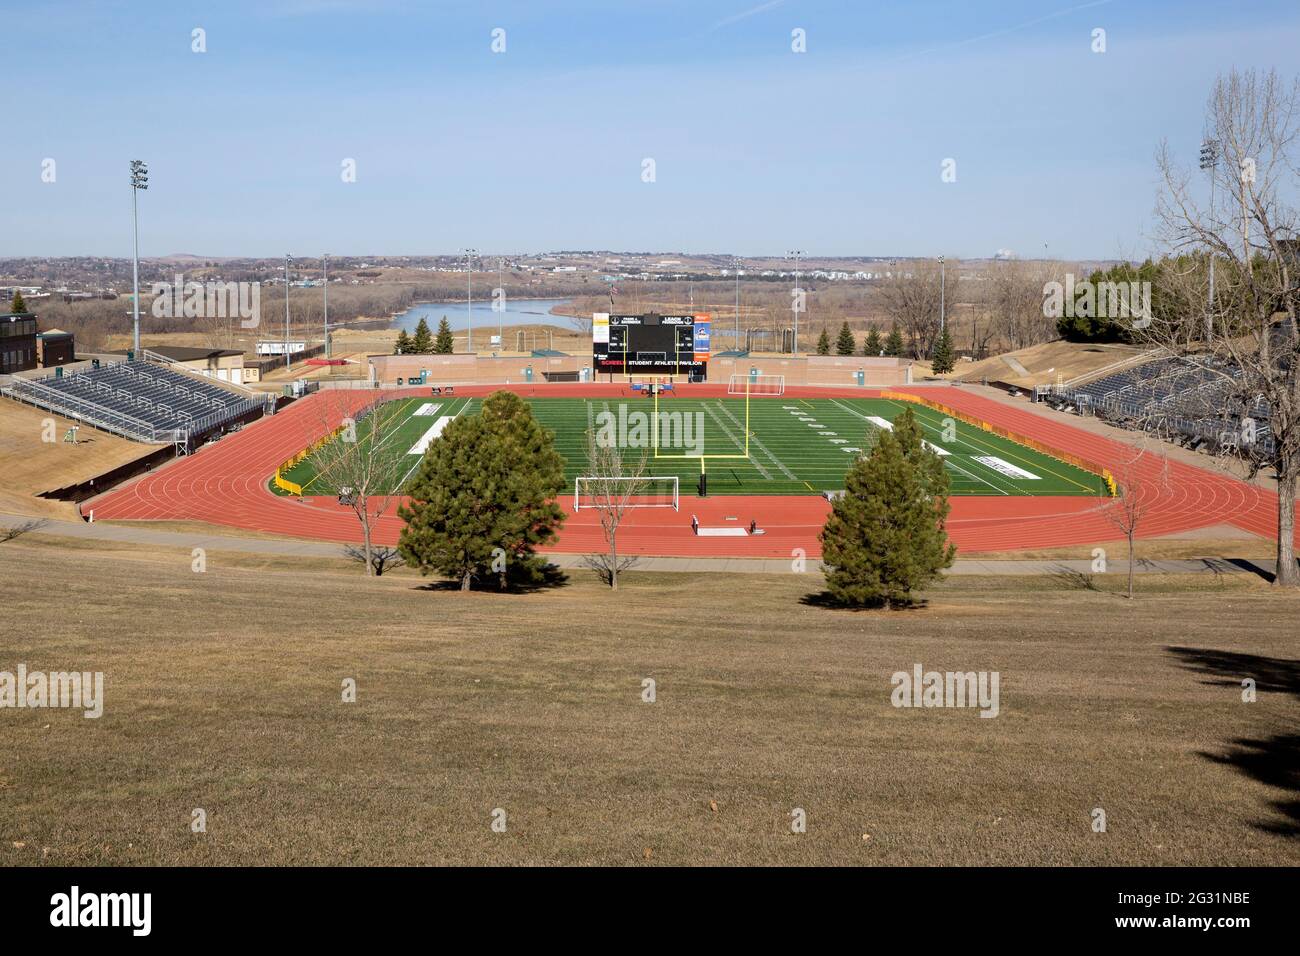 Complesso sportivo americano di uno stadio di calcio con un campo di erba artificiale, pista da corsa, e si trova al Bismarck state College, North Dakota Foto Stock